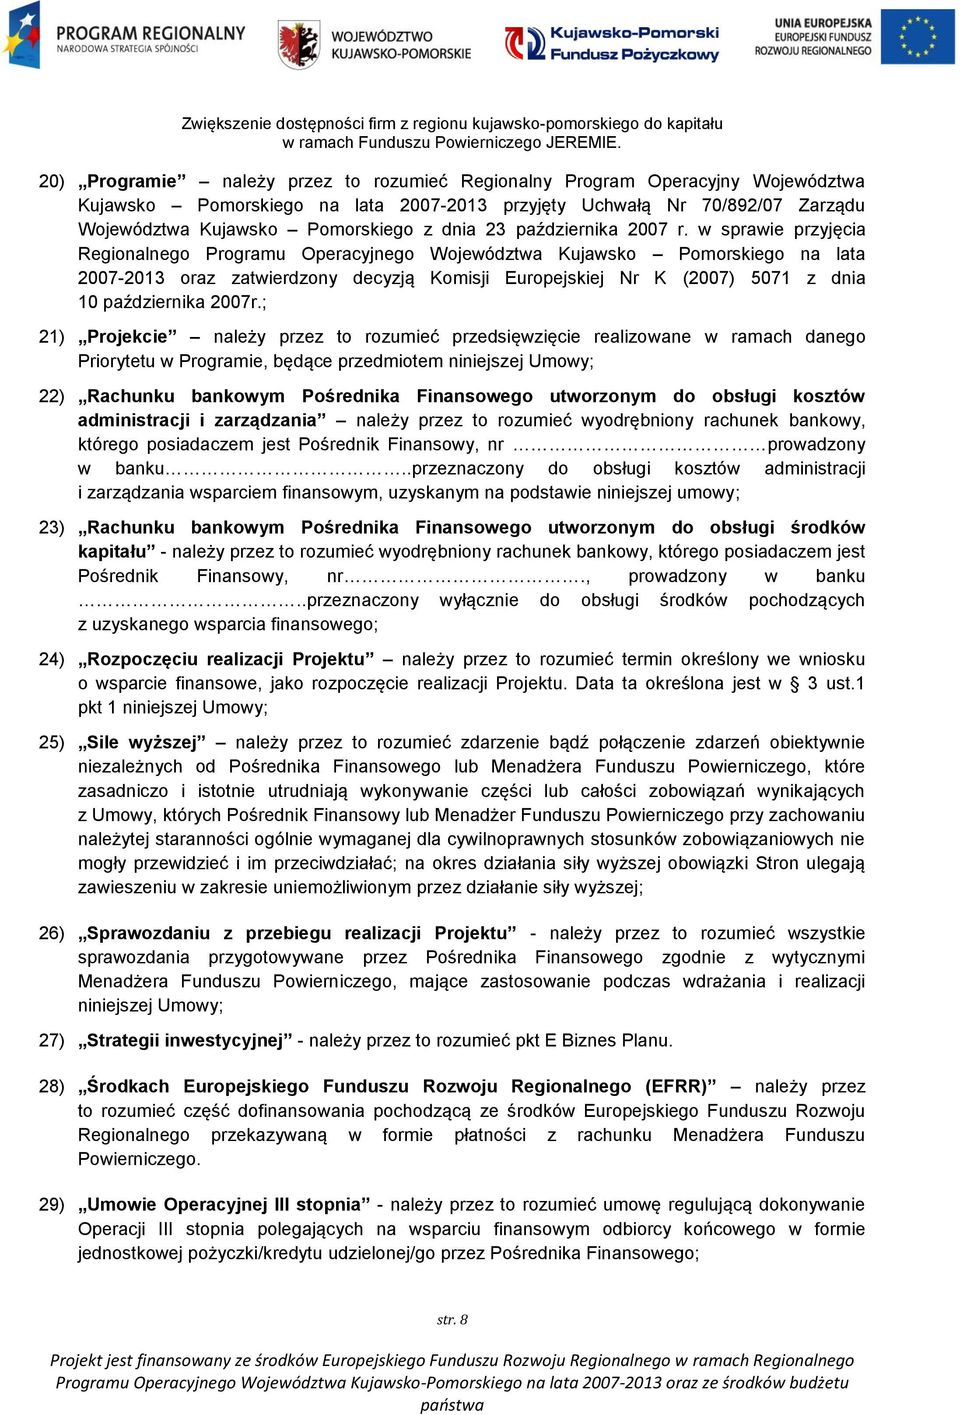 w sprawie przyjęcia Regionalnego Programu Operacyjnego Województwa Kujawsko Pomorskiego na lata 2007-2013 oraz zatwierdzony decyzją Komisji Europejskiej Nr K (2007) 5071 z dnia 10 października 2007r.